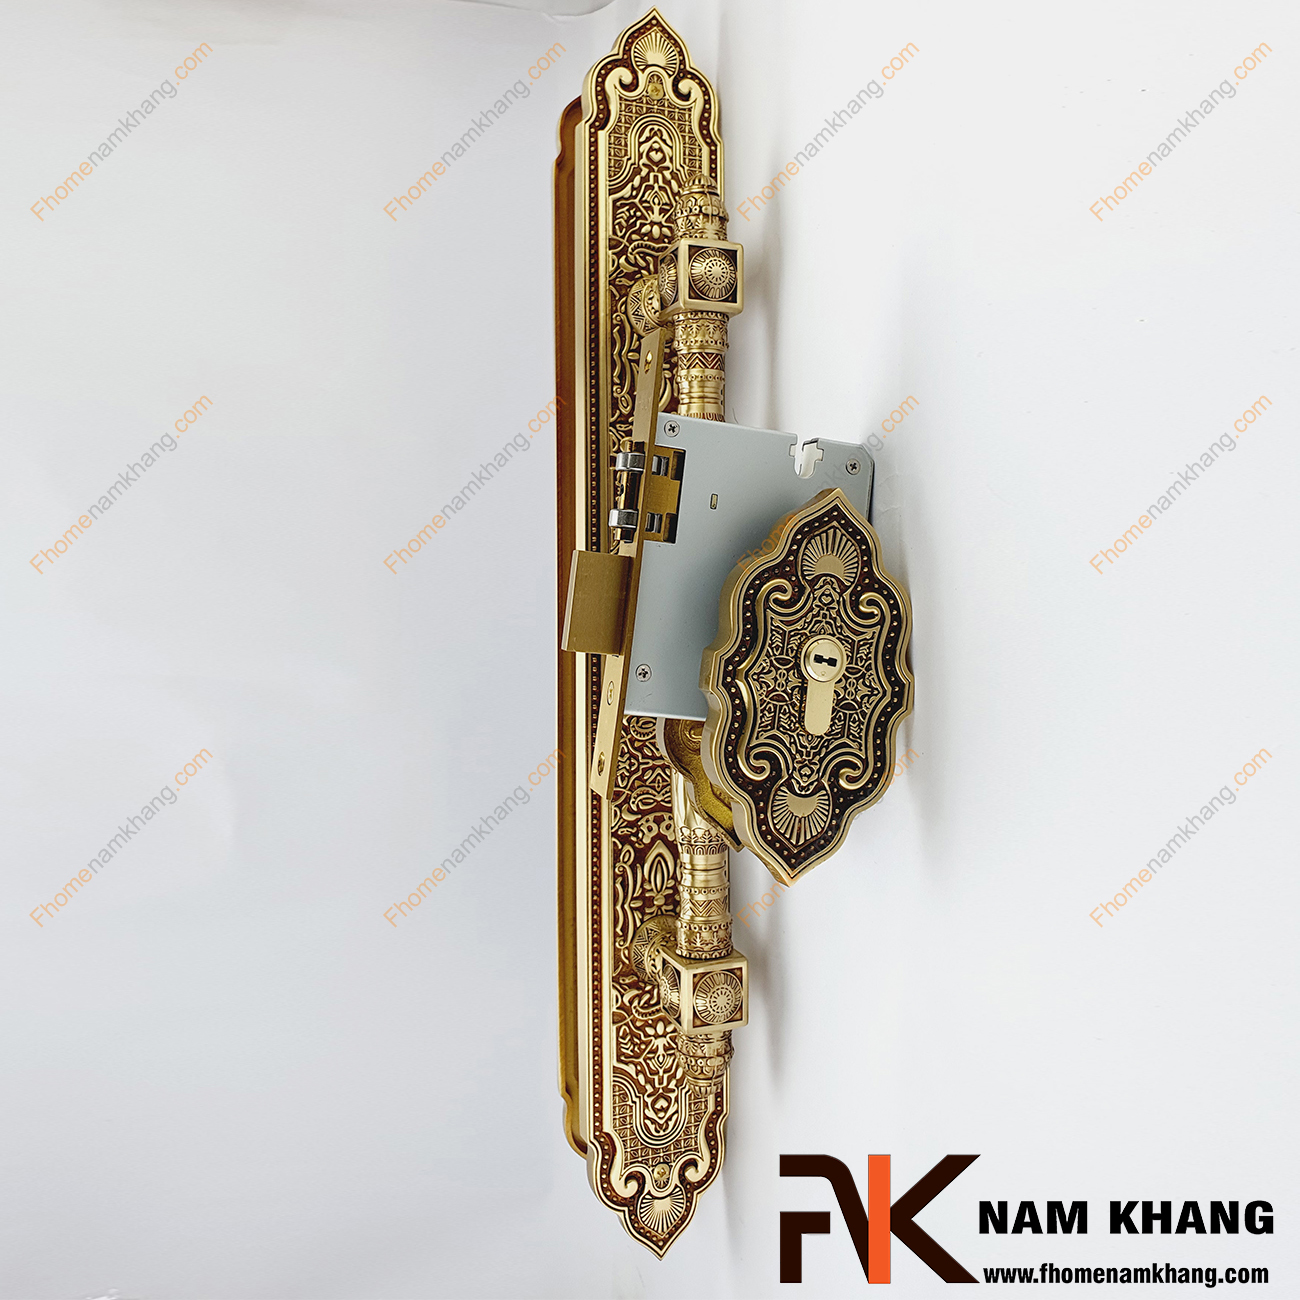 Khóa cửa sảnh phối hợp bằng đồng cao cấp NK477XL-RC là dạng khóa cửa phối hợp đặc trưng khi kết hợp dòng khóa thân rời và tay nắm cửa sảnh lớn.